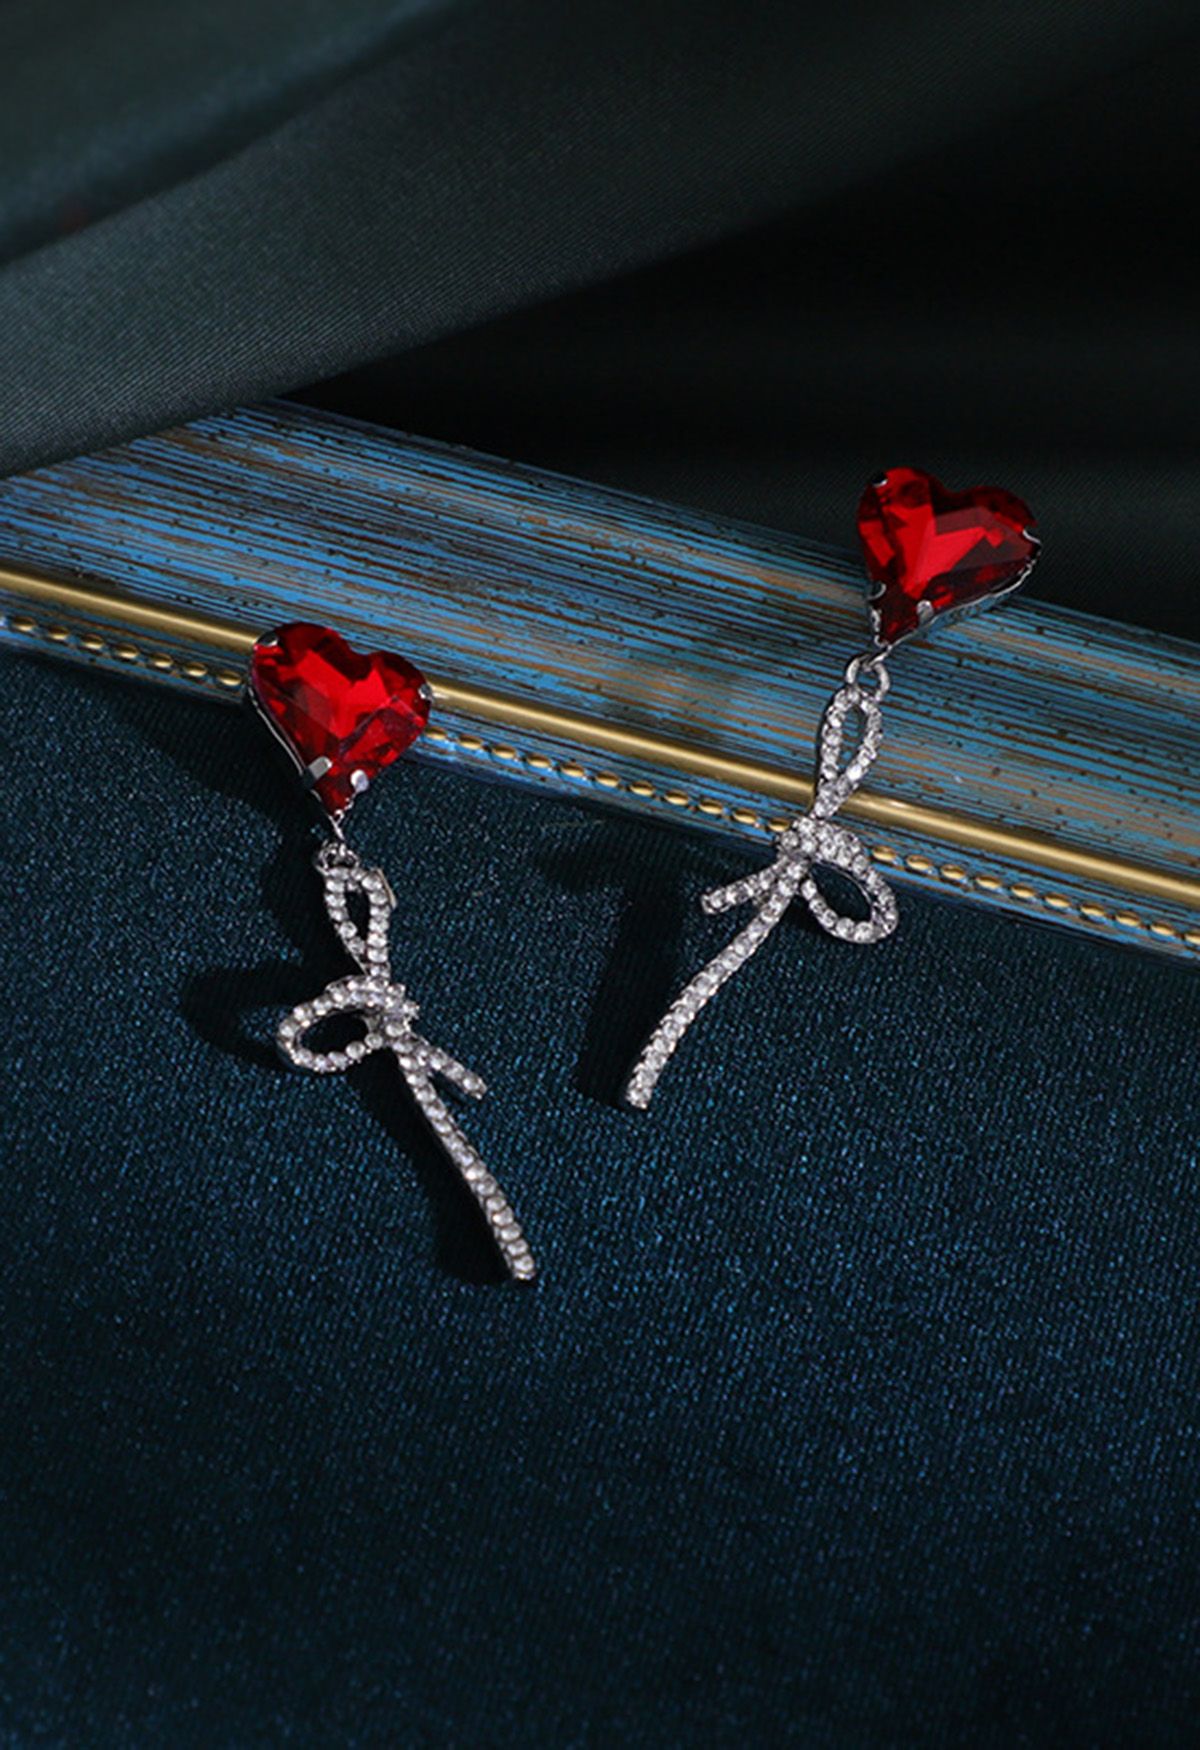 Red Heart Bowknot Rhinestone Earrings